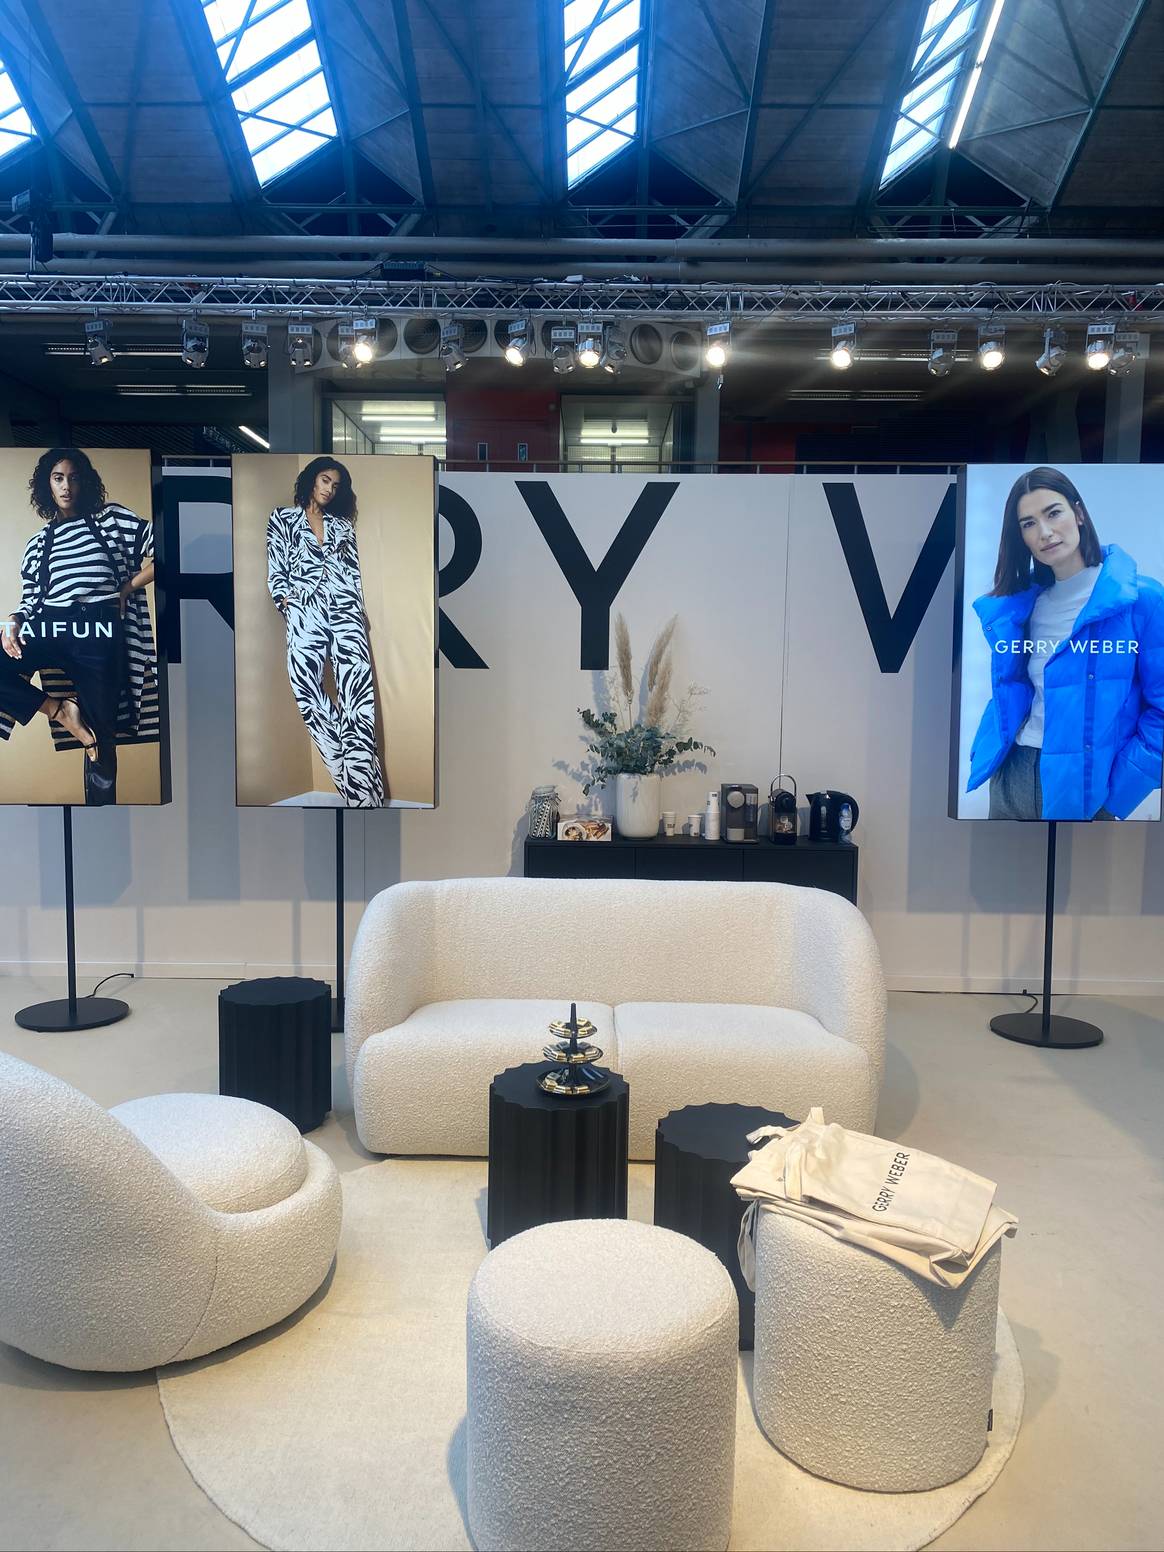 Gerry Weber zeigt ein neues Ladenkonzept auf der Messe Modefabriek. Foto: FashionUnited